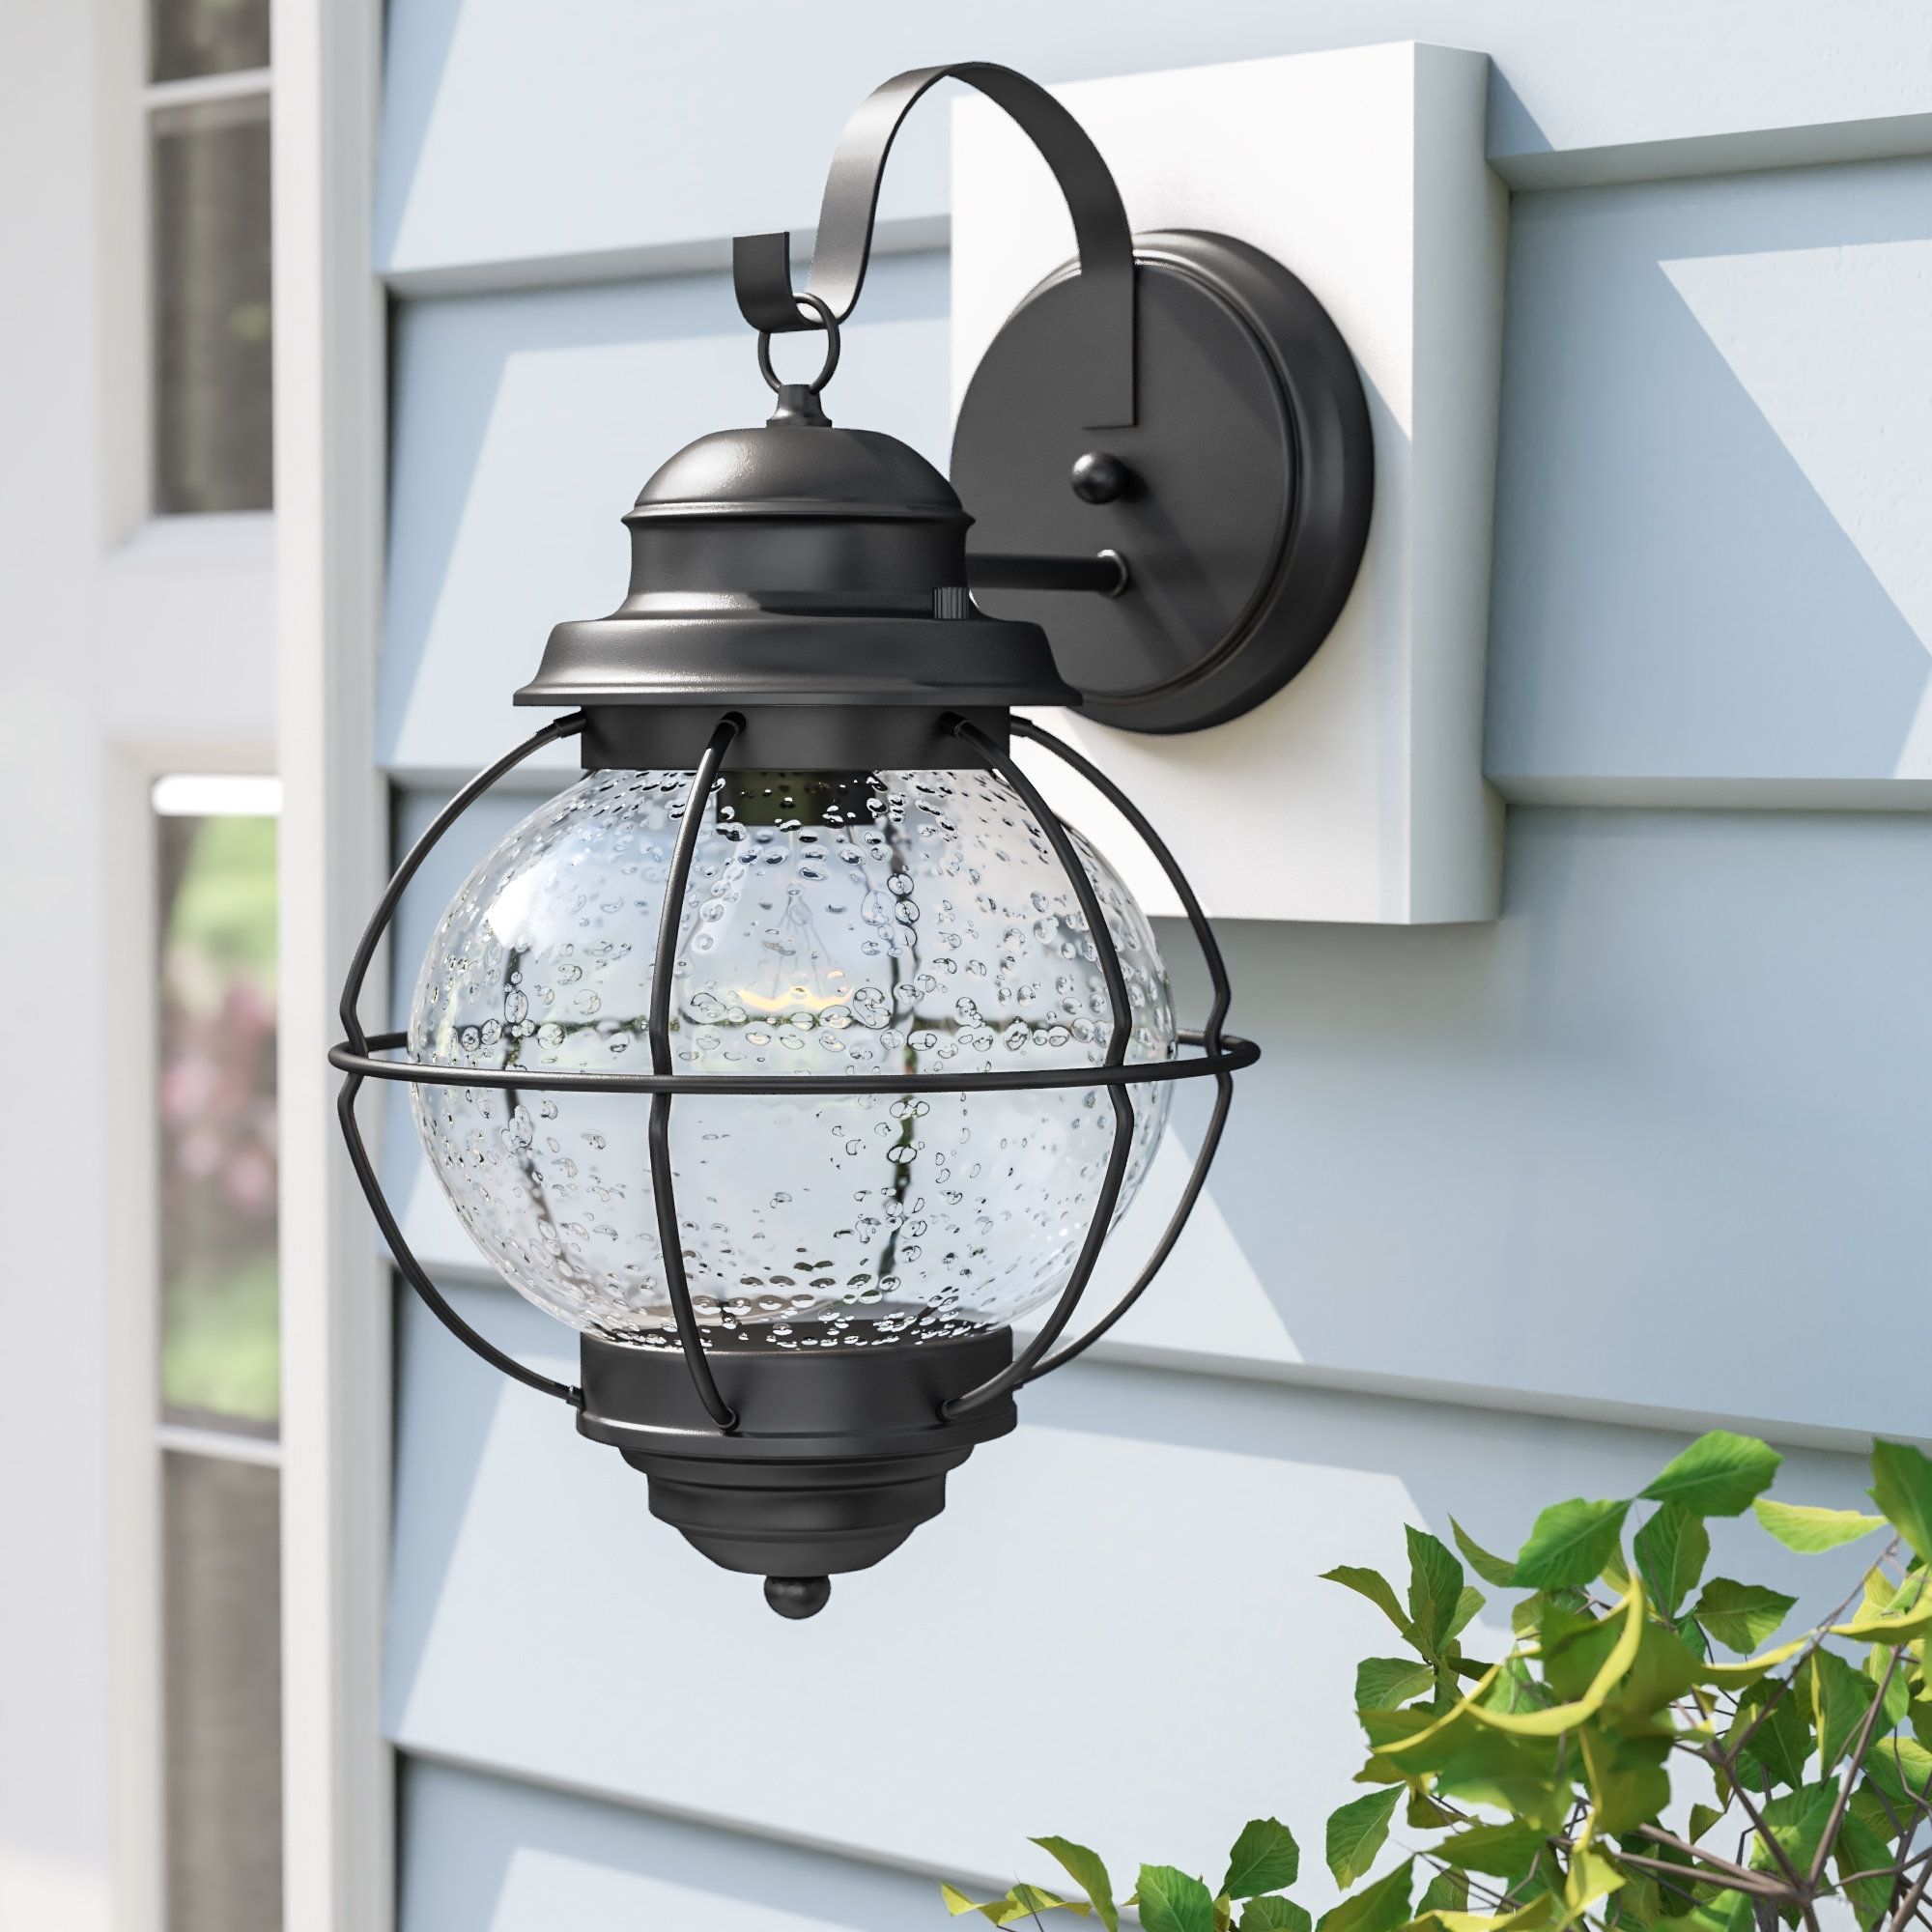 Beachcrest Home Cason 1 Light Outdoor Wall Lantern & Reviews | Wayfair Regarding Outdoor Indian Lanterns (View 20 of 20)